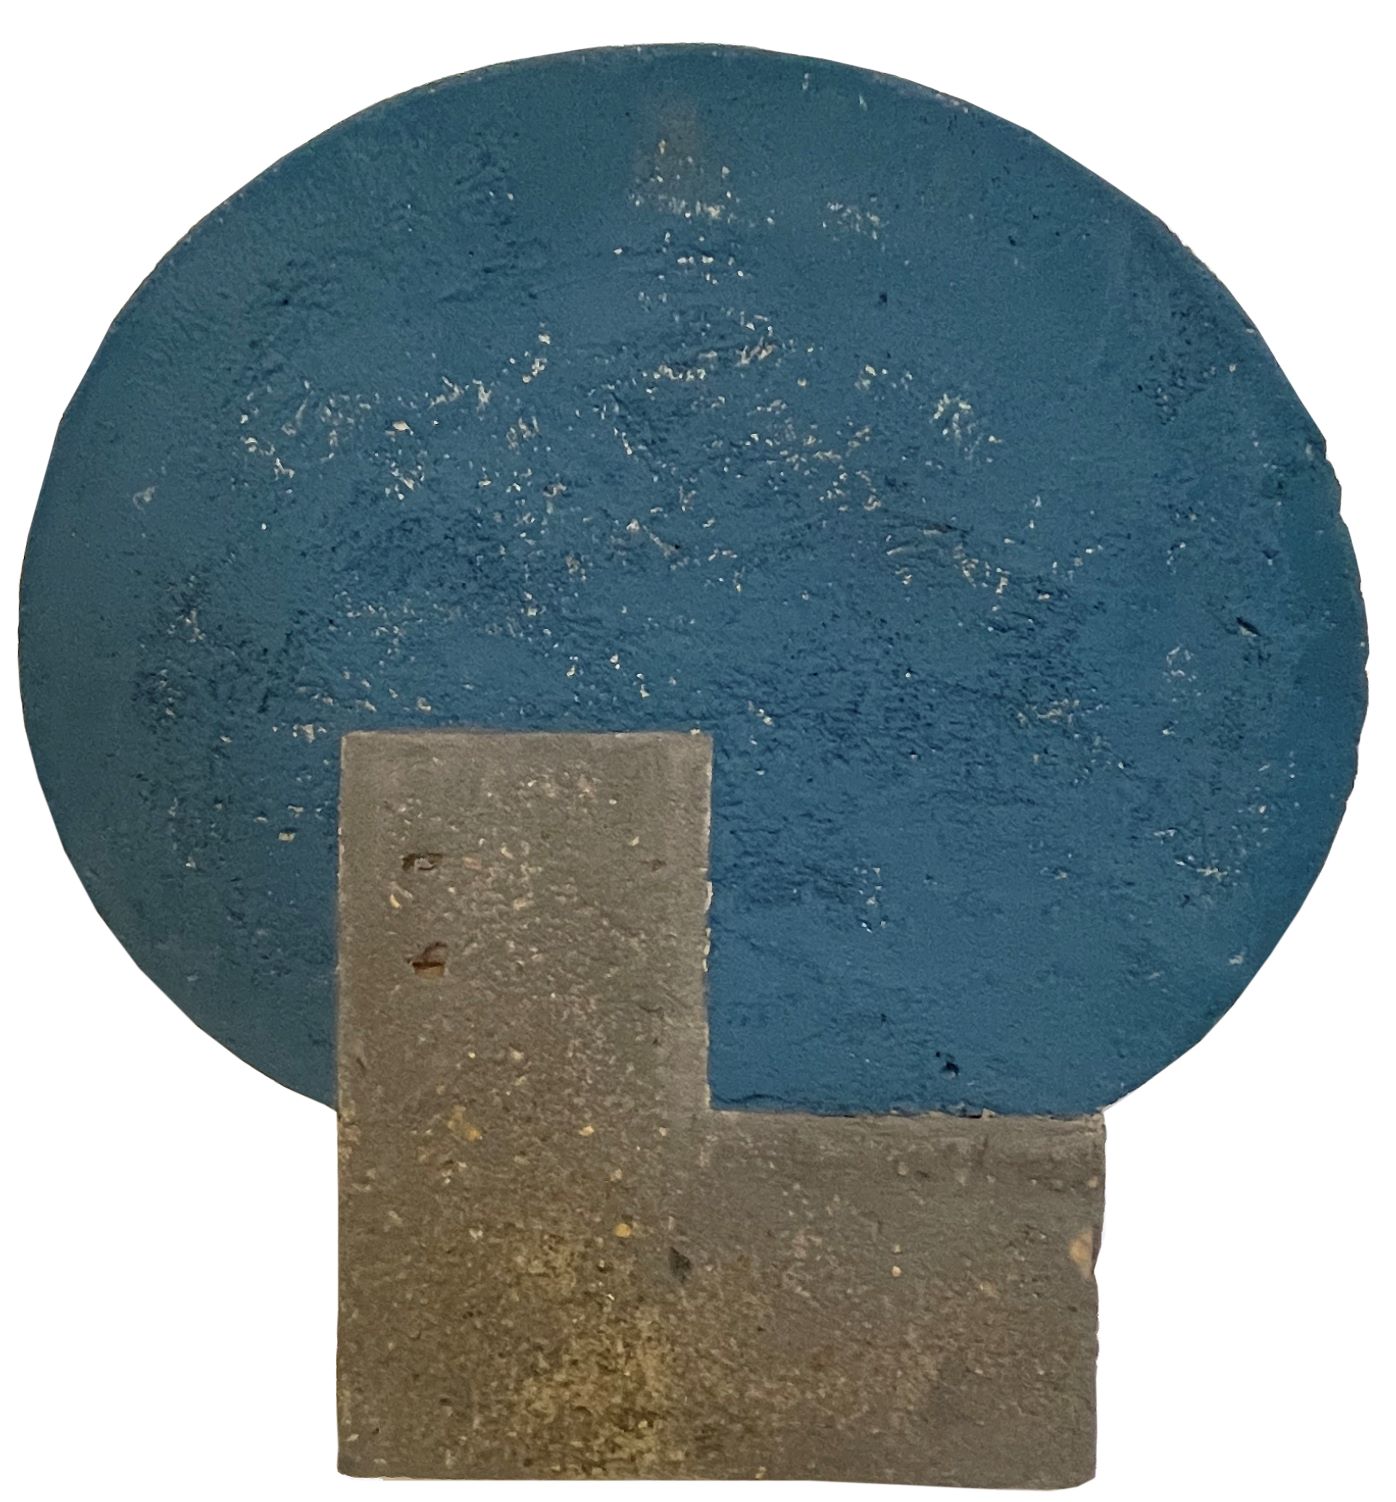 07.José Ivacy. Incrustações 06, 2022 concreto oval azul escuro e L